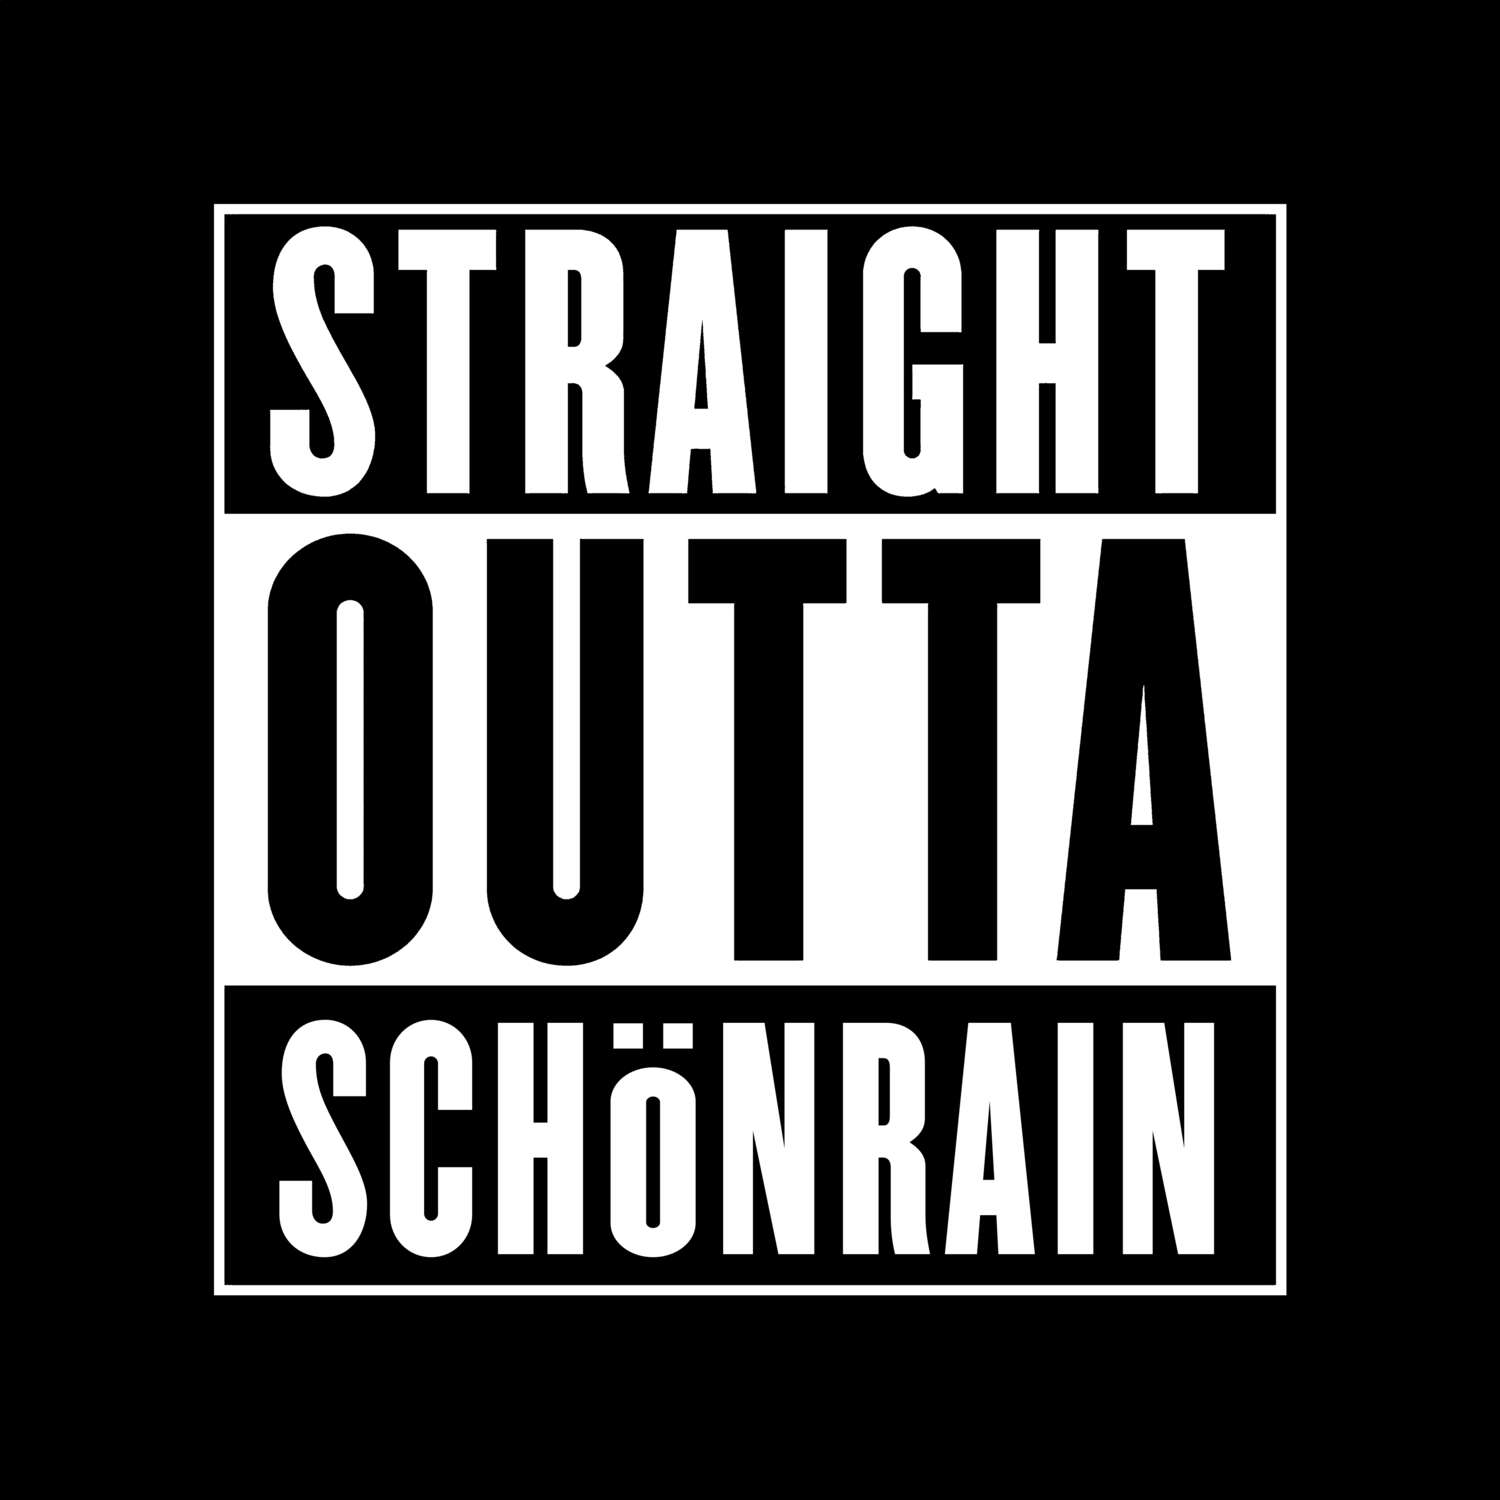 Schönrain T-Shirt »Straight Outta«